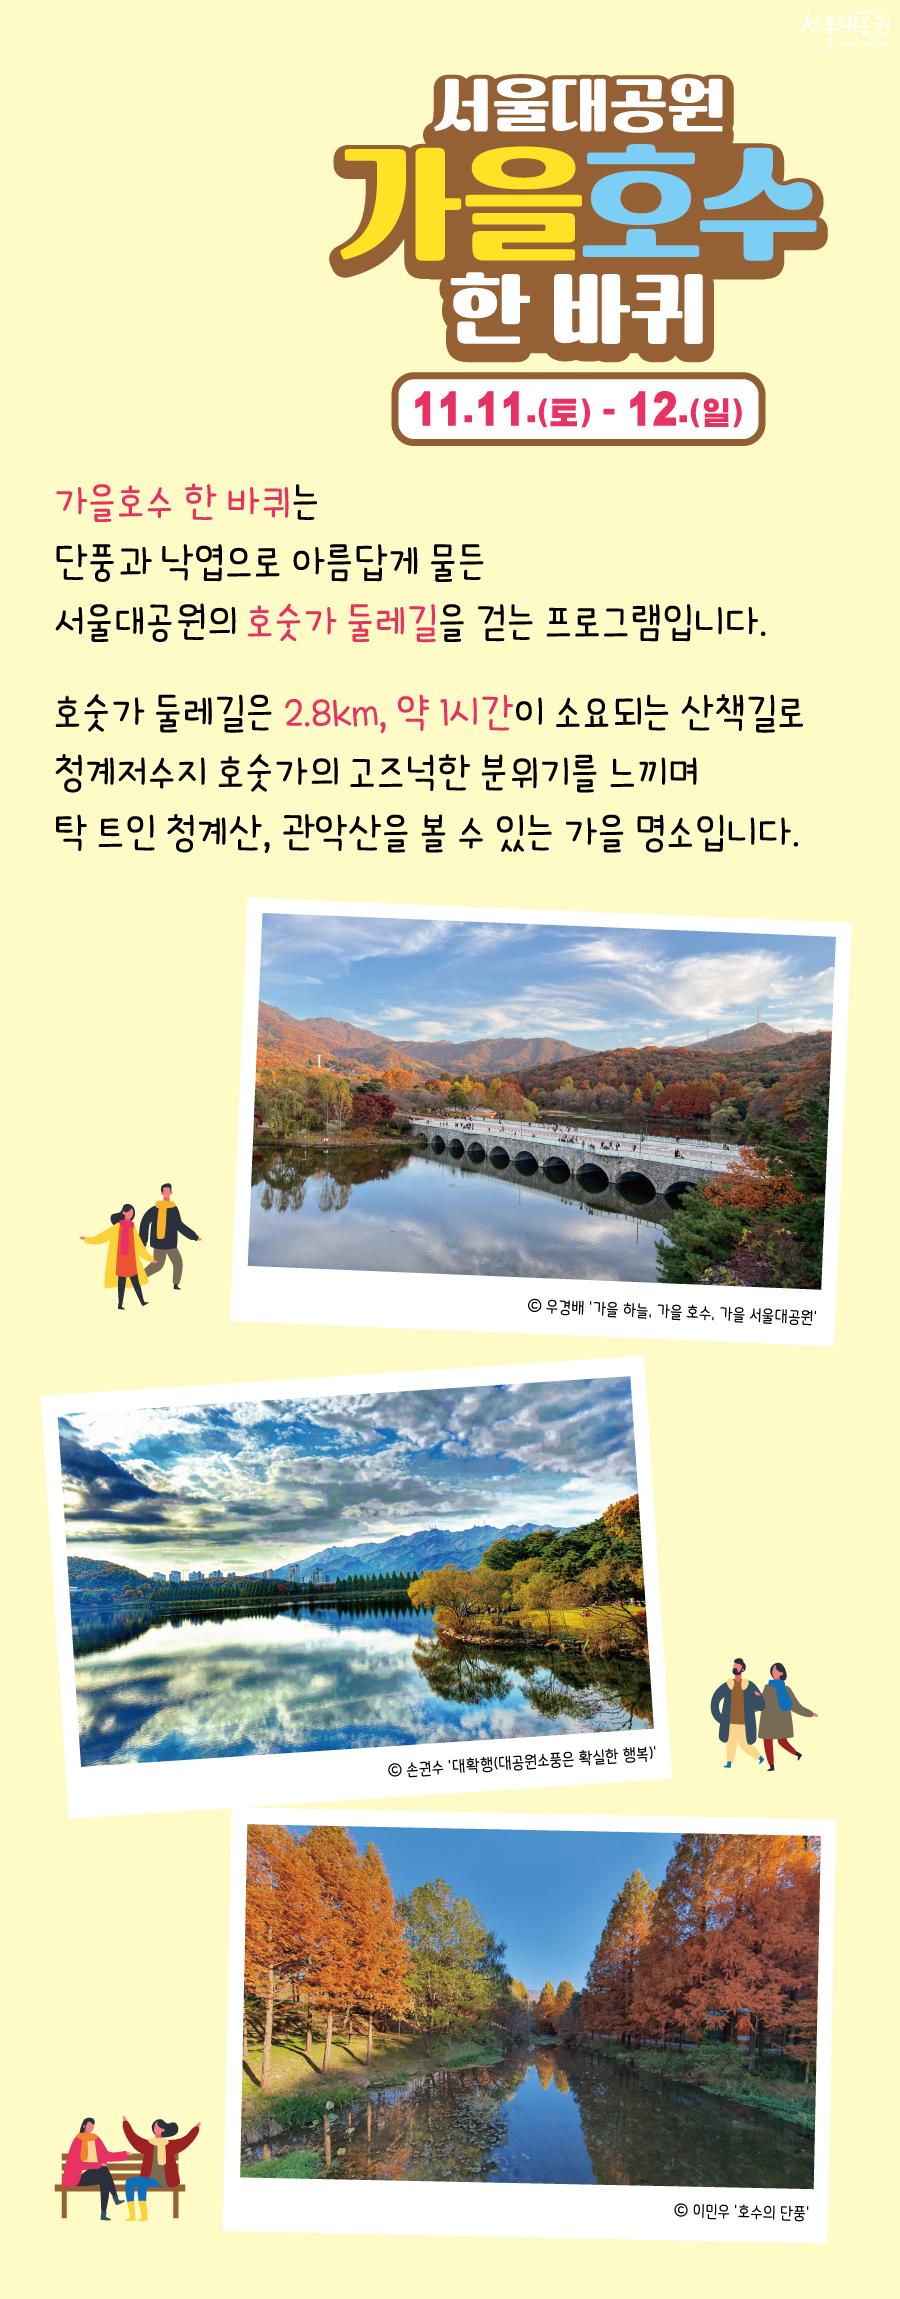 서울대공원 가을호수 한 바퀴 11.11.(토) - 12.(일)